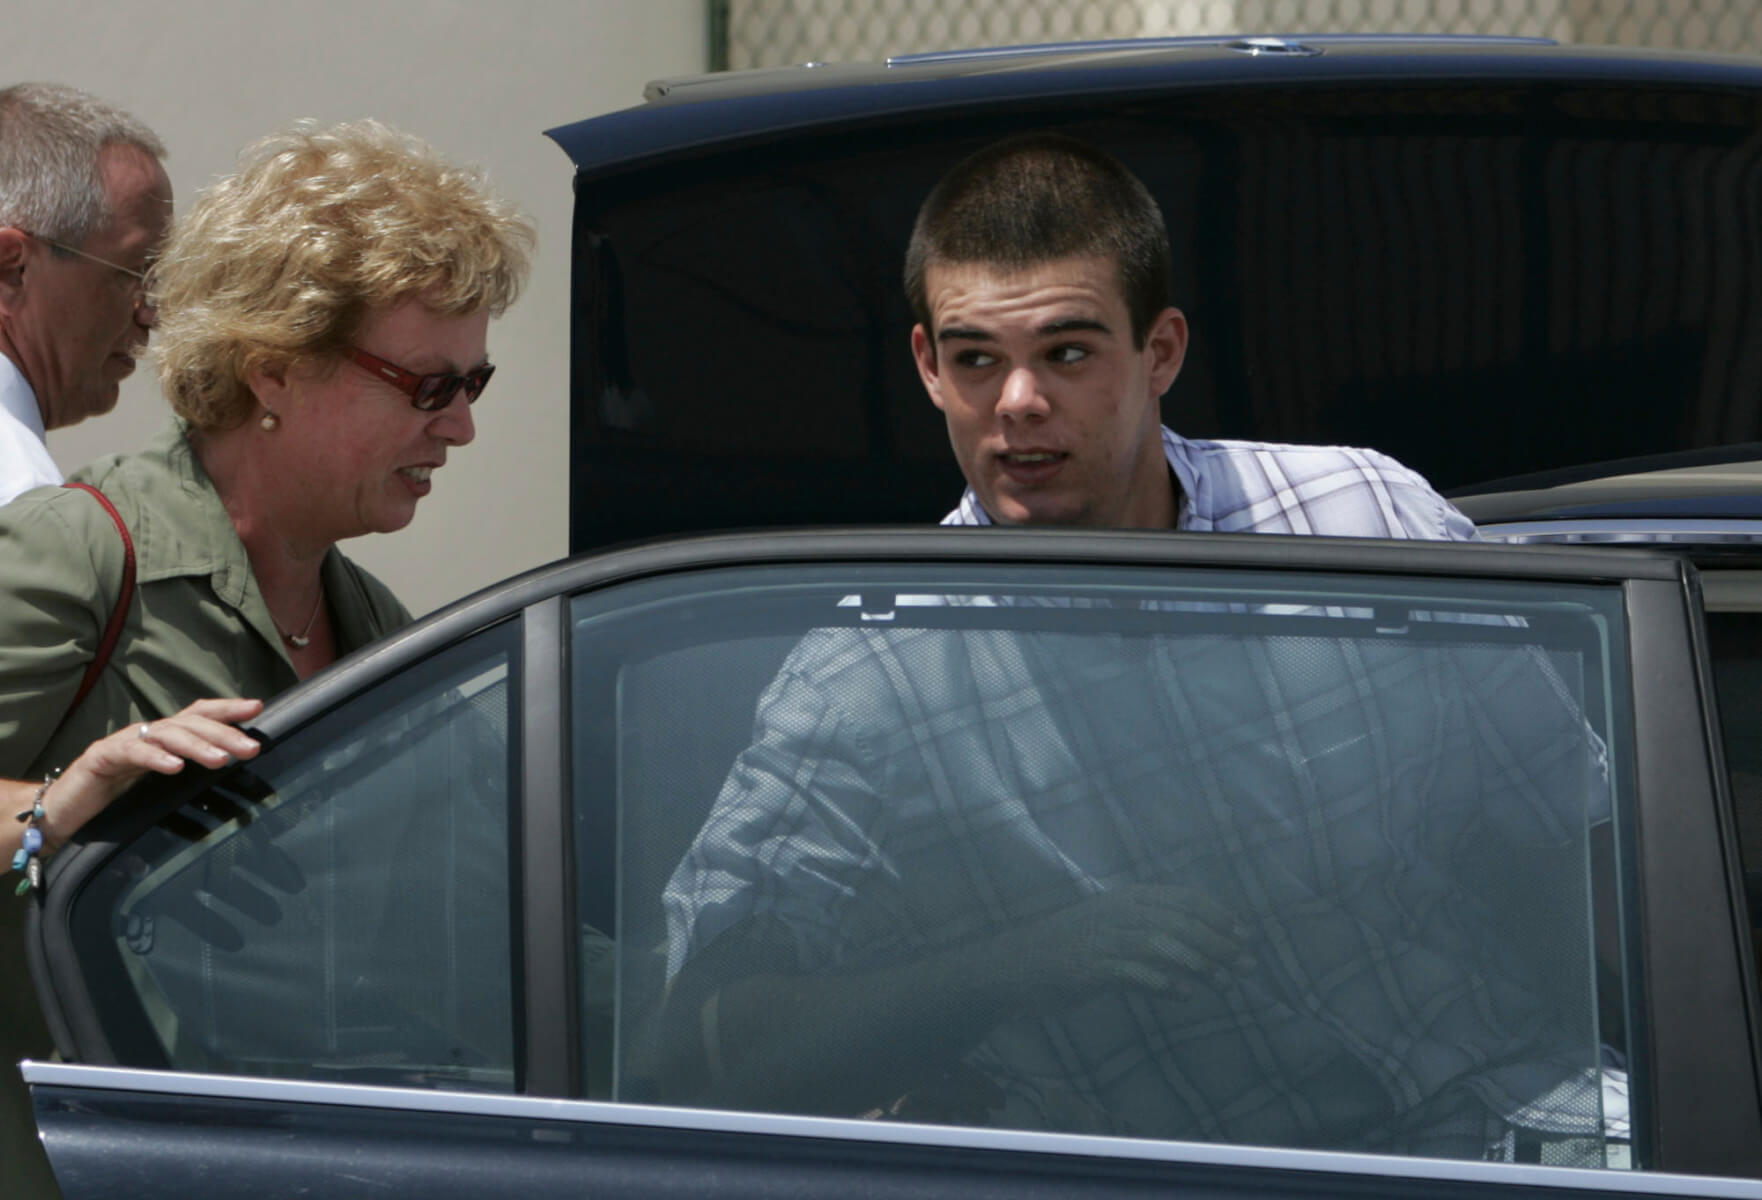 Joran van der Sloot enters his family's car.